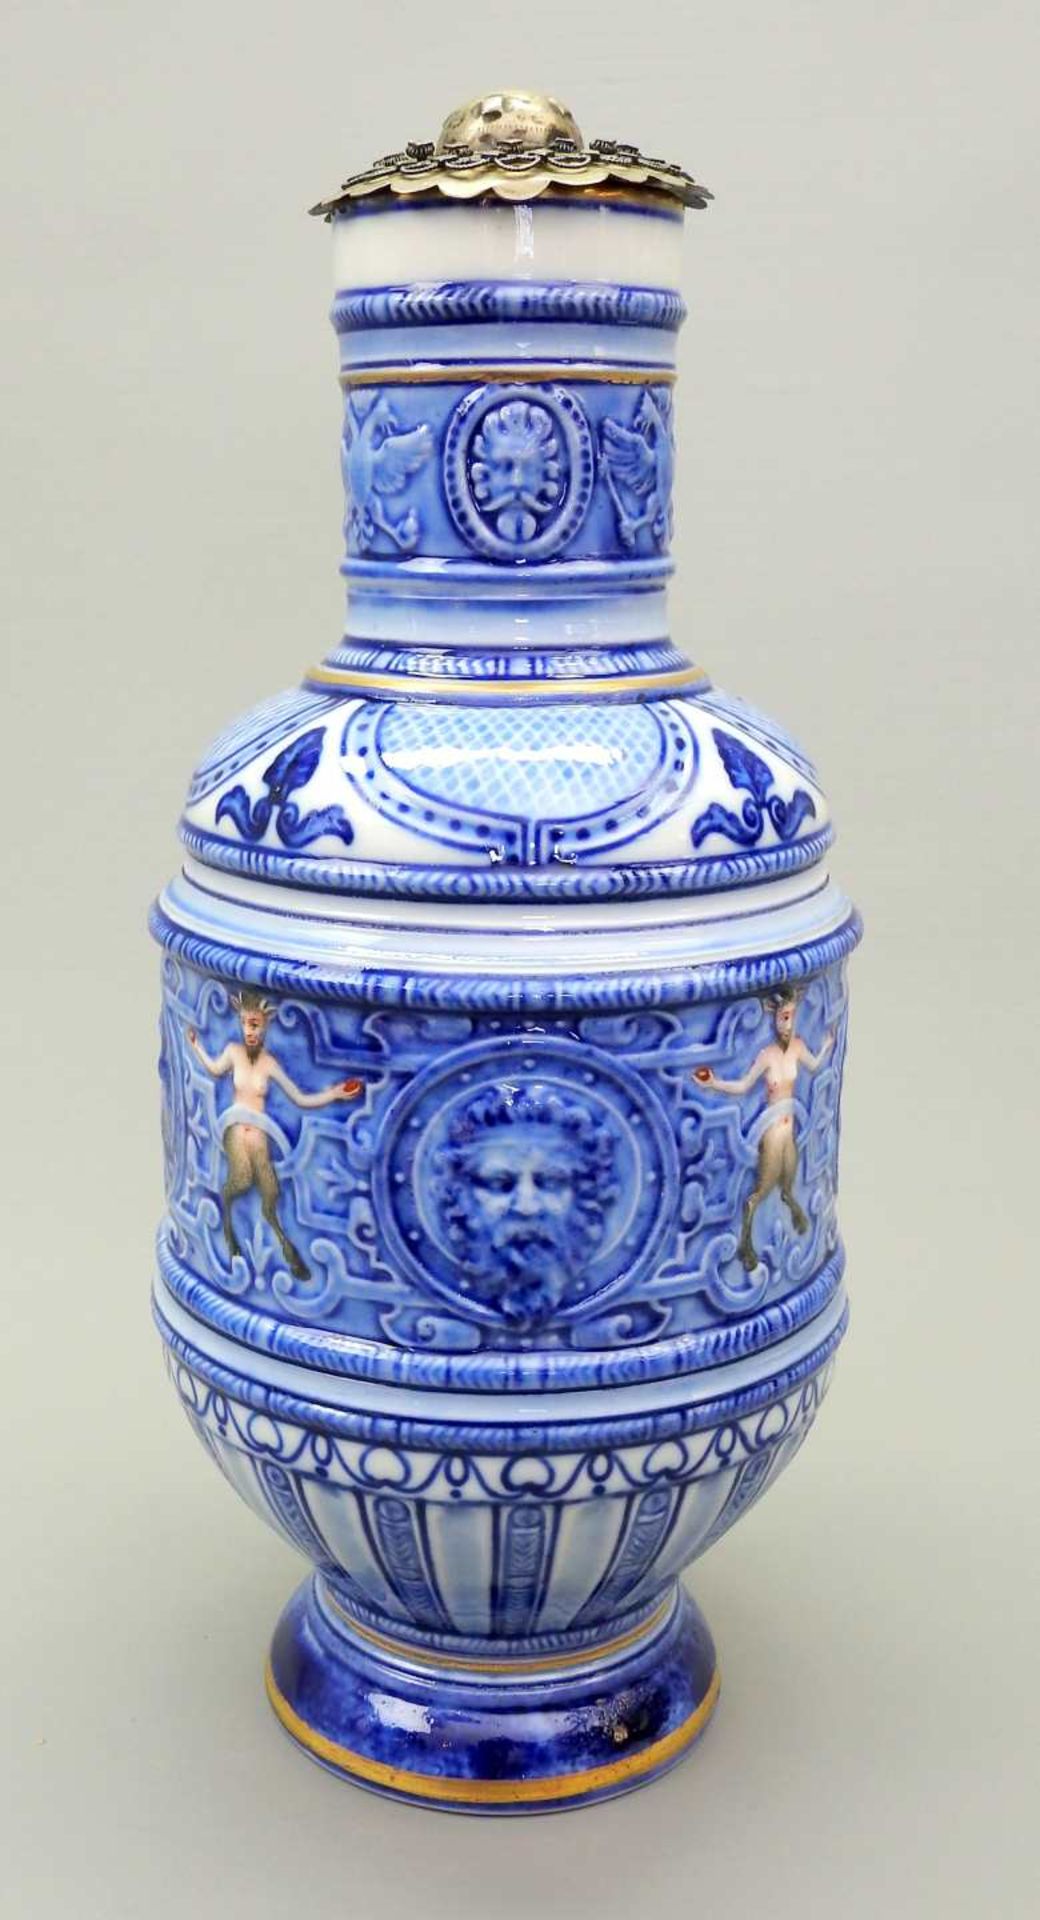 KPM, Historismuskanne Porzellan, am Boden mit unterglasurblauer Zeptermarke versehen. - Image 4 of 9